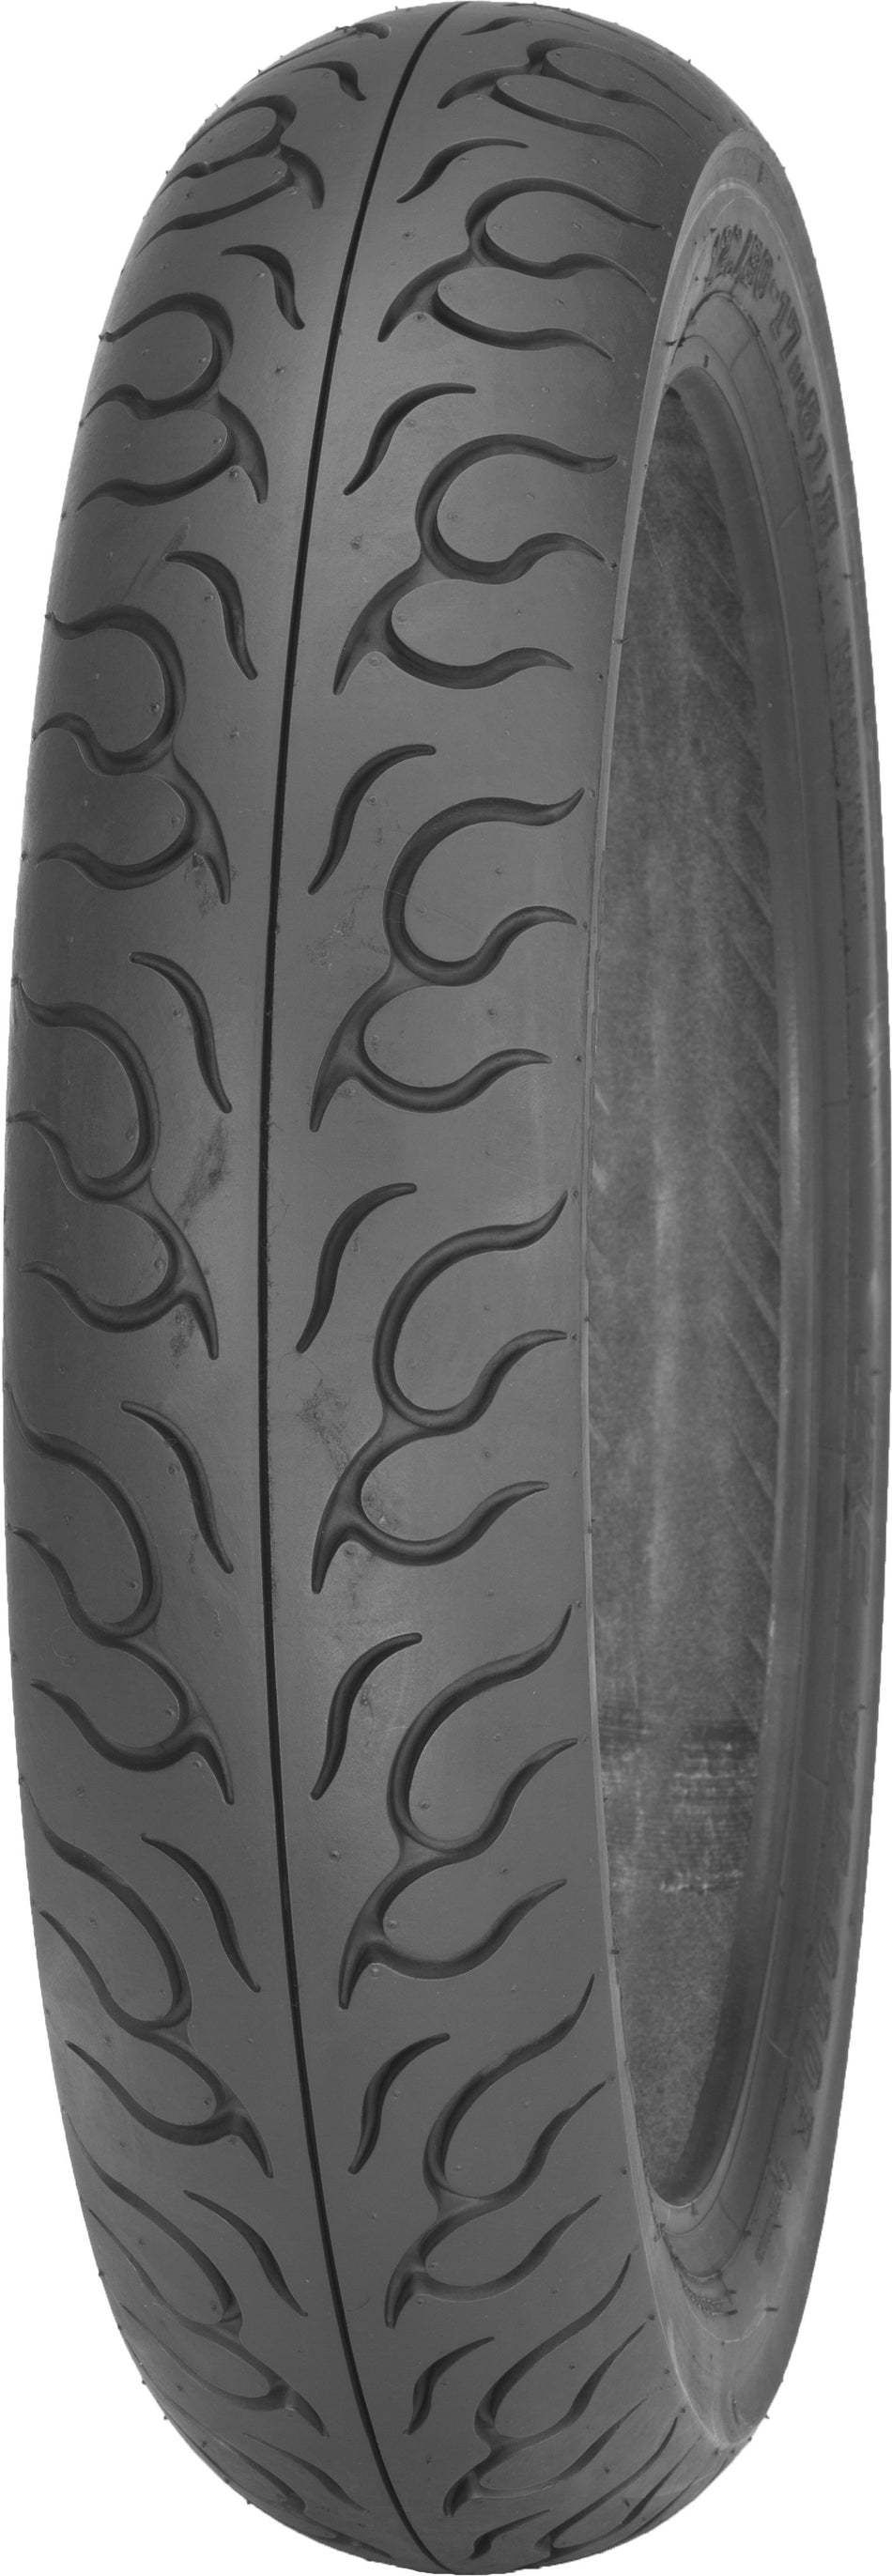 IRC Tire Wf-920hd Front 130/90-16 73h Bias 302751